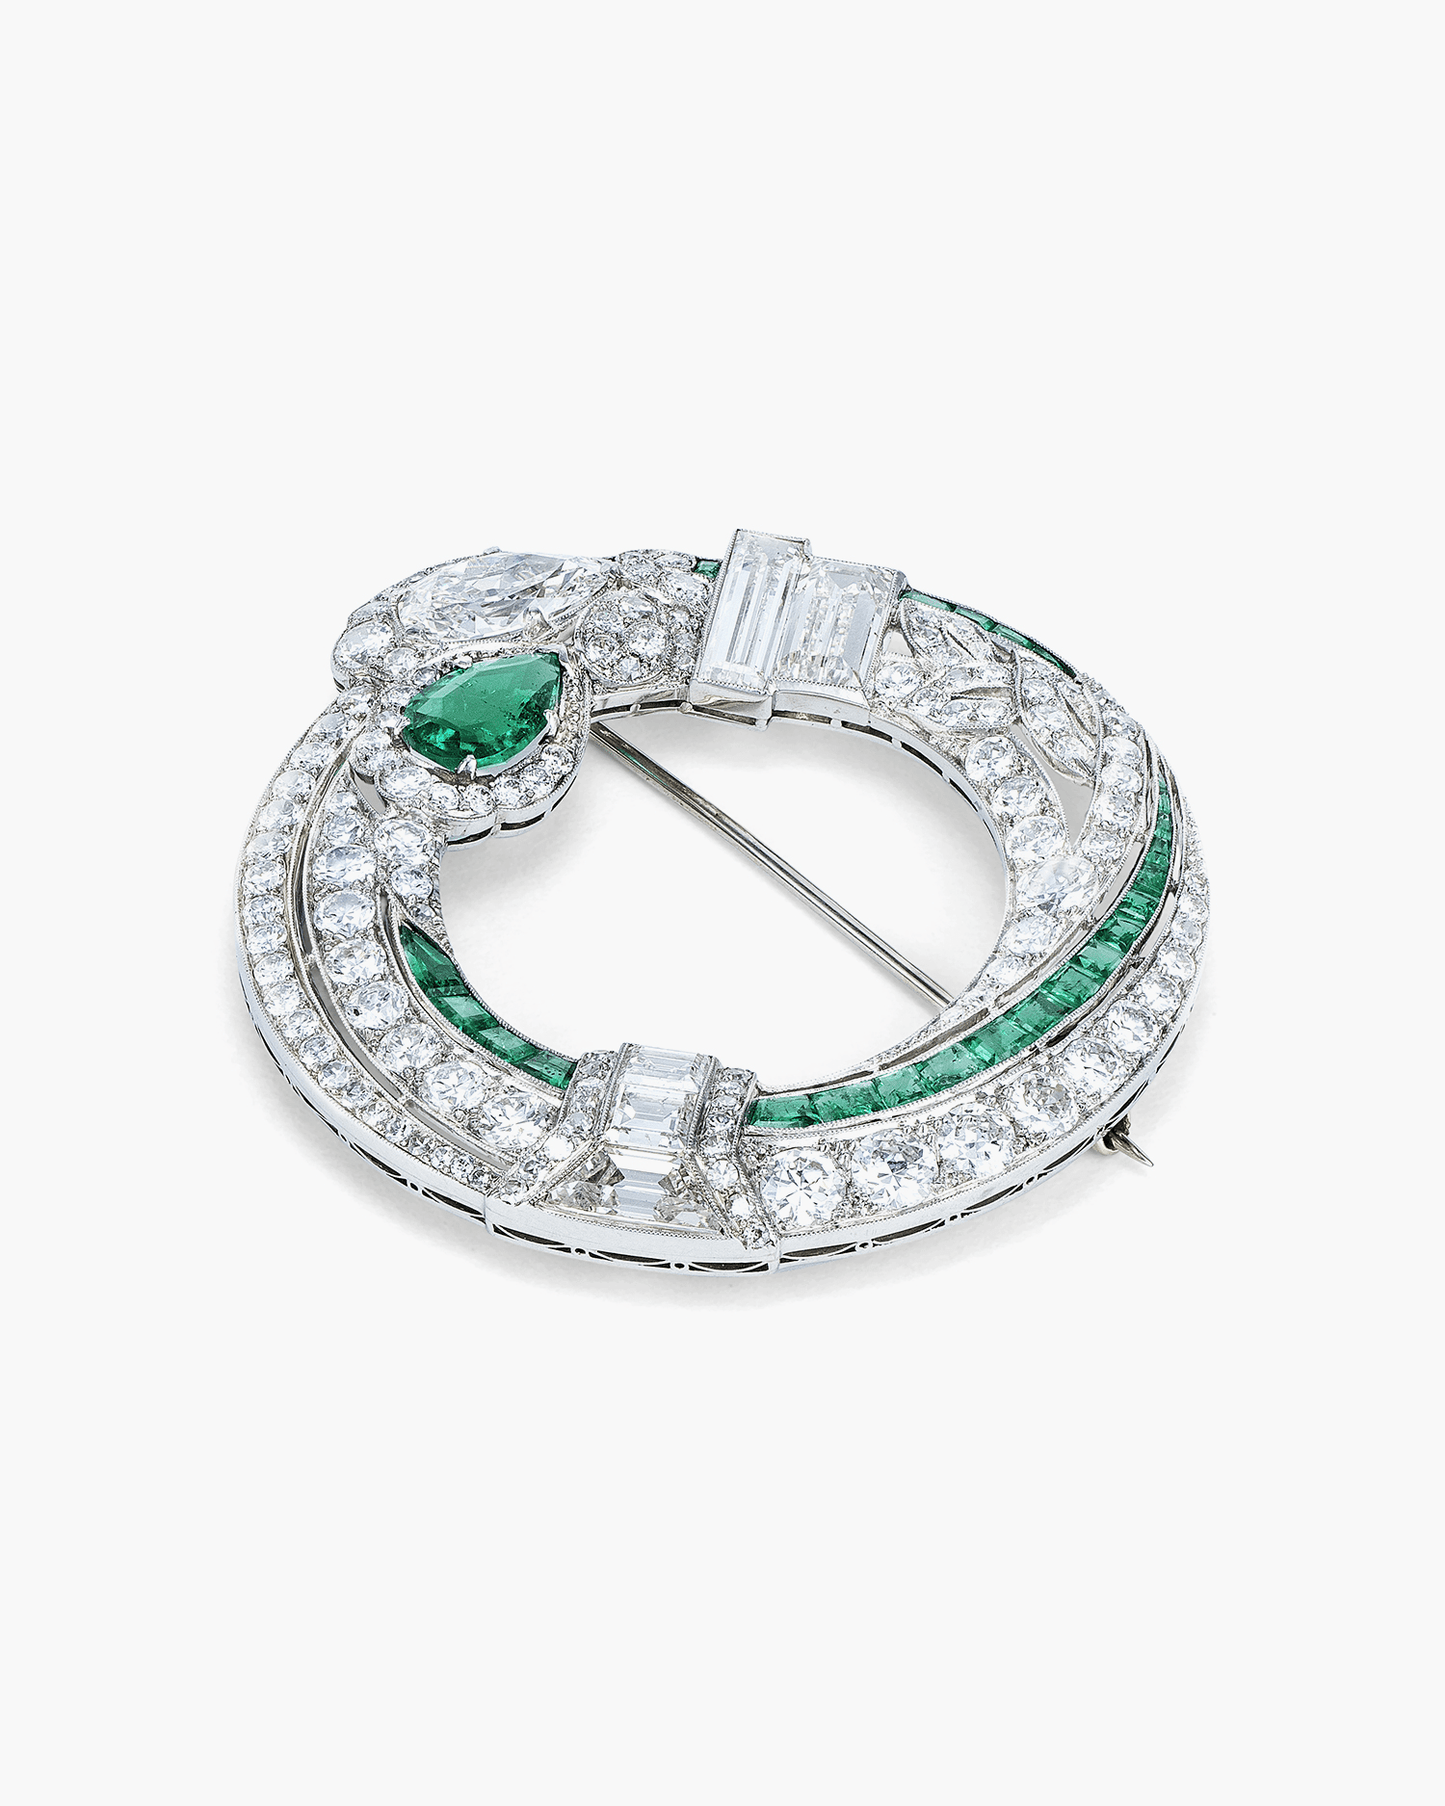 Art Deco Emerald and Diamond Brooch by Oscar Heyman